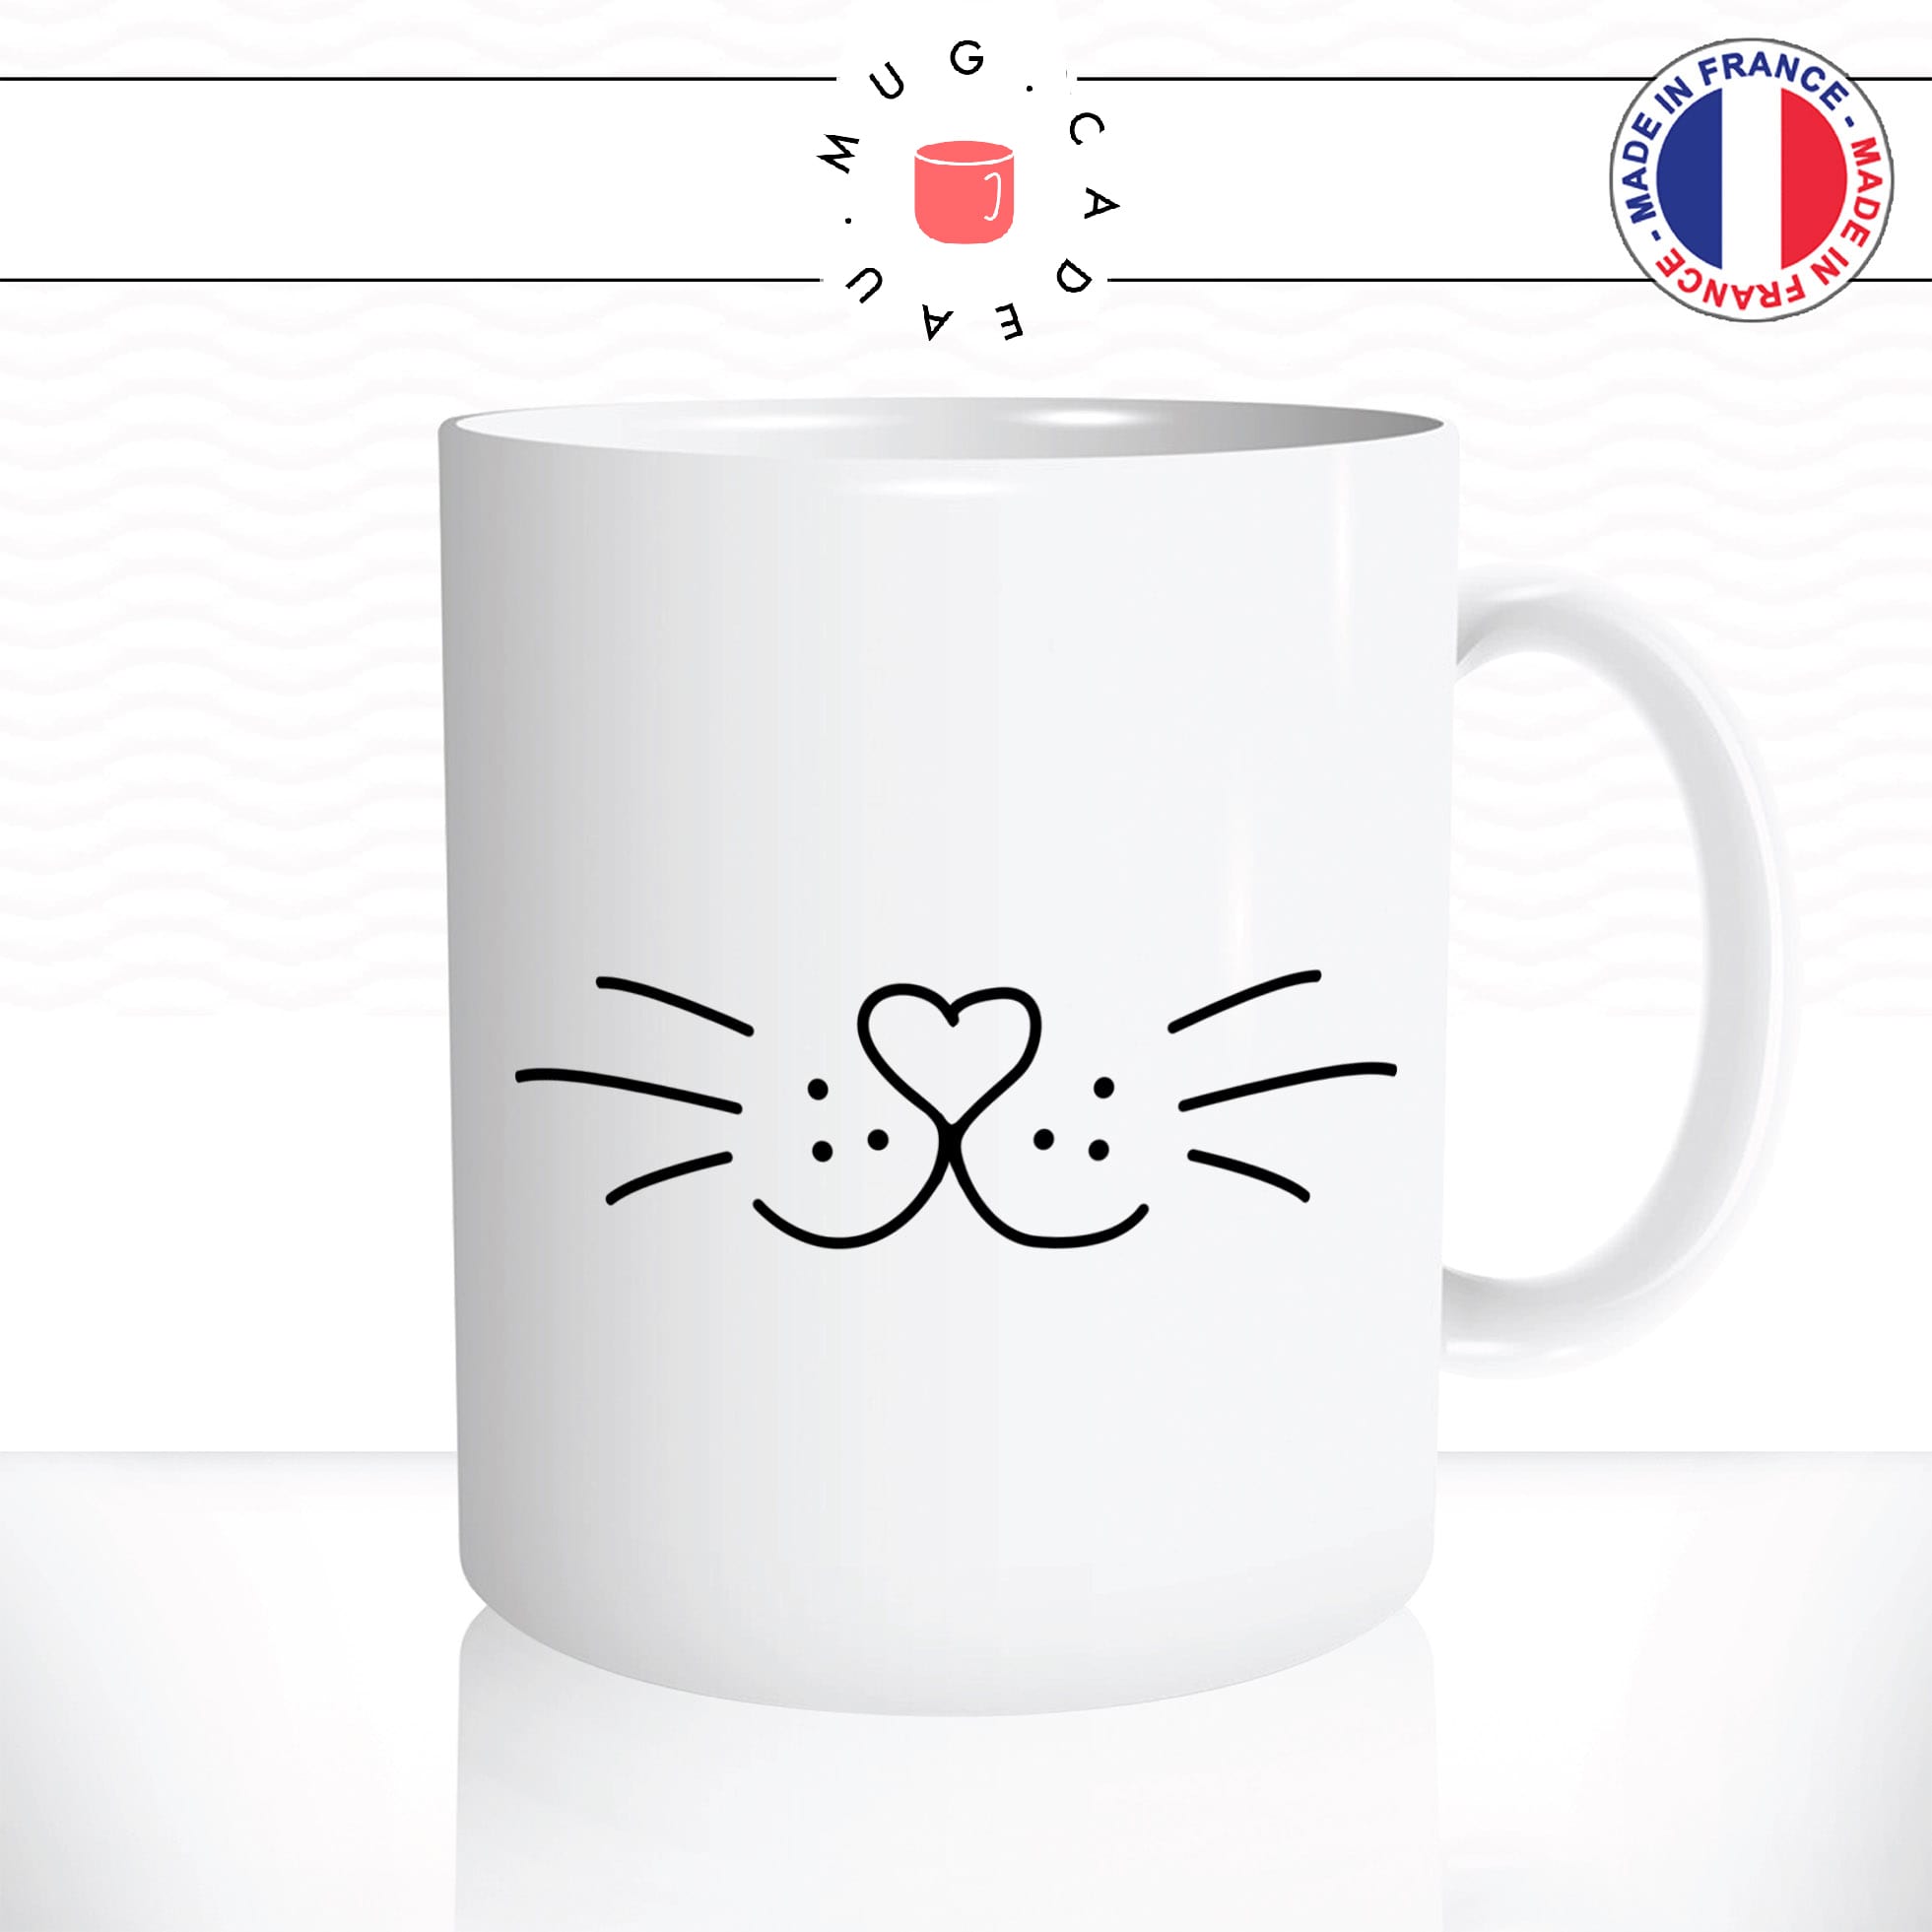 mug-tasse-chat-chaton-moustache-nez-coeur-amour-mignon-dessin-animal-cafe-thé-idée-cadeau-original